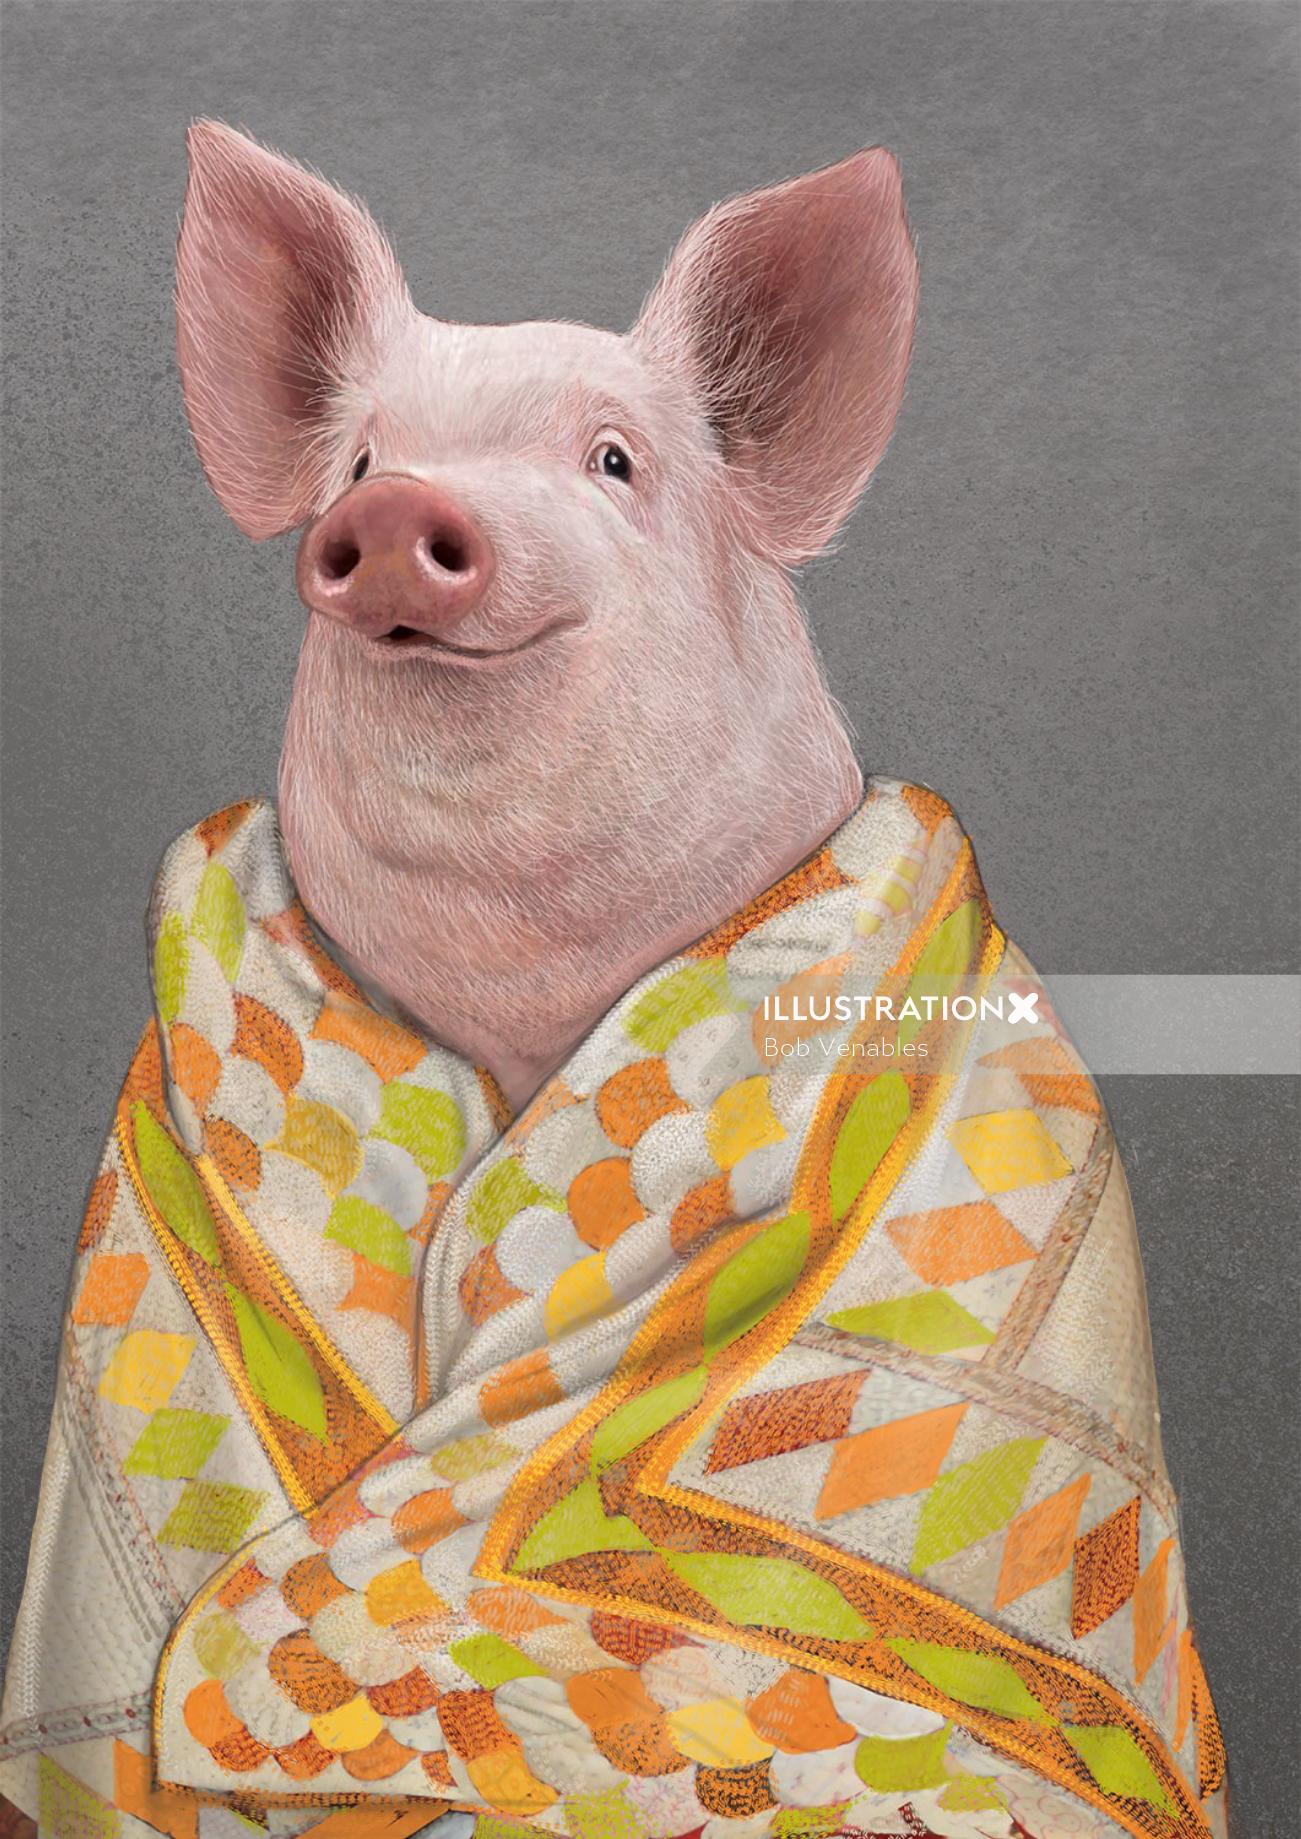 Portrait de cochon animal